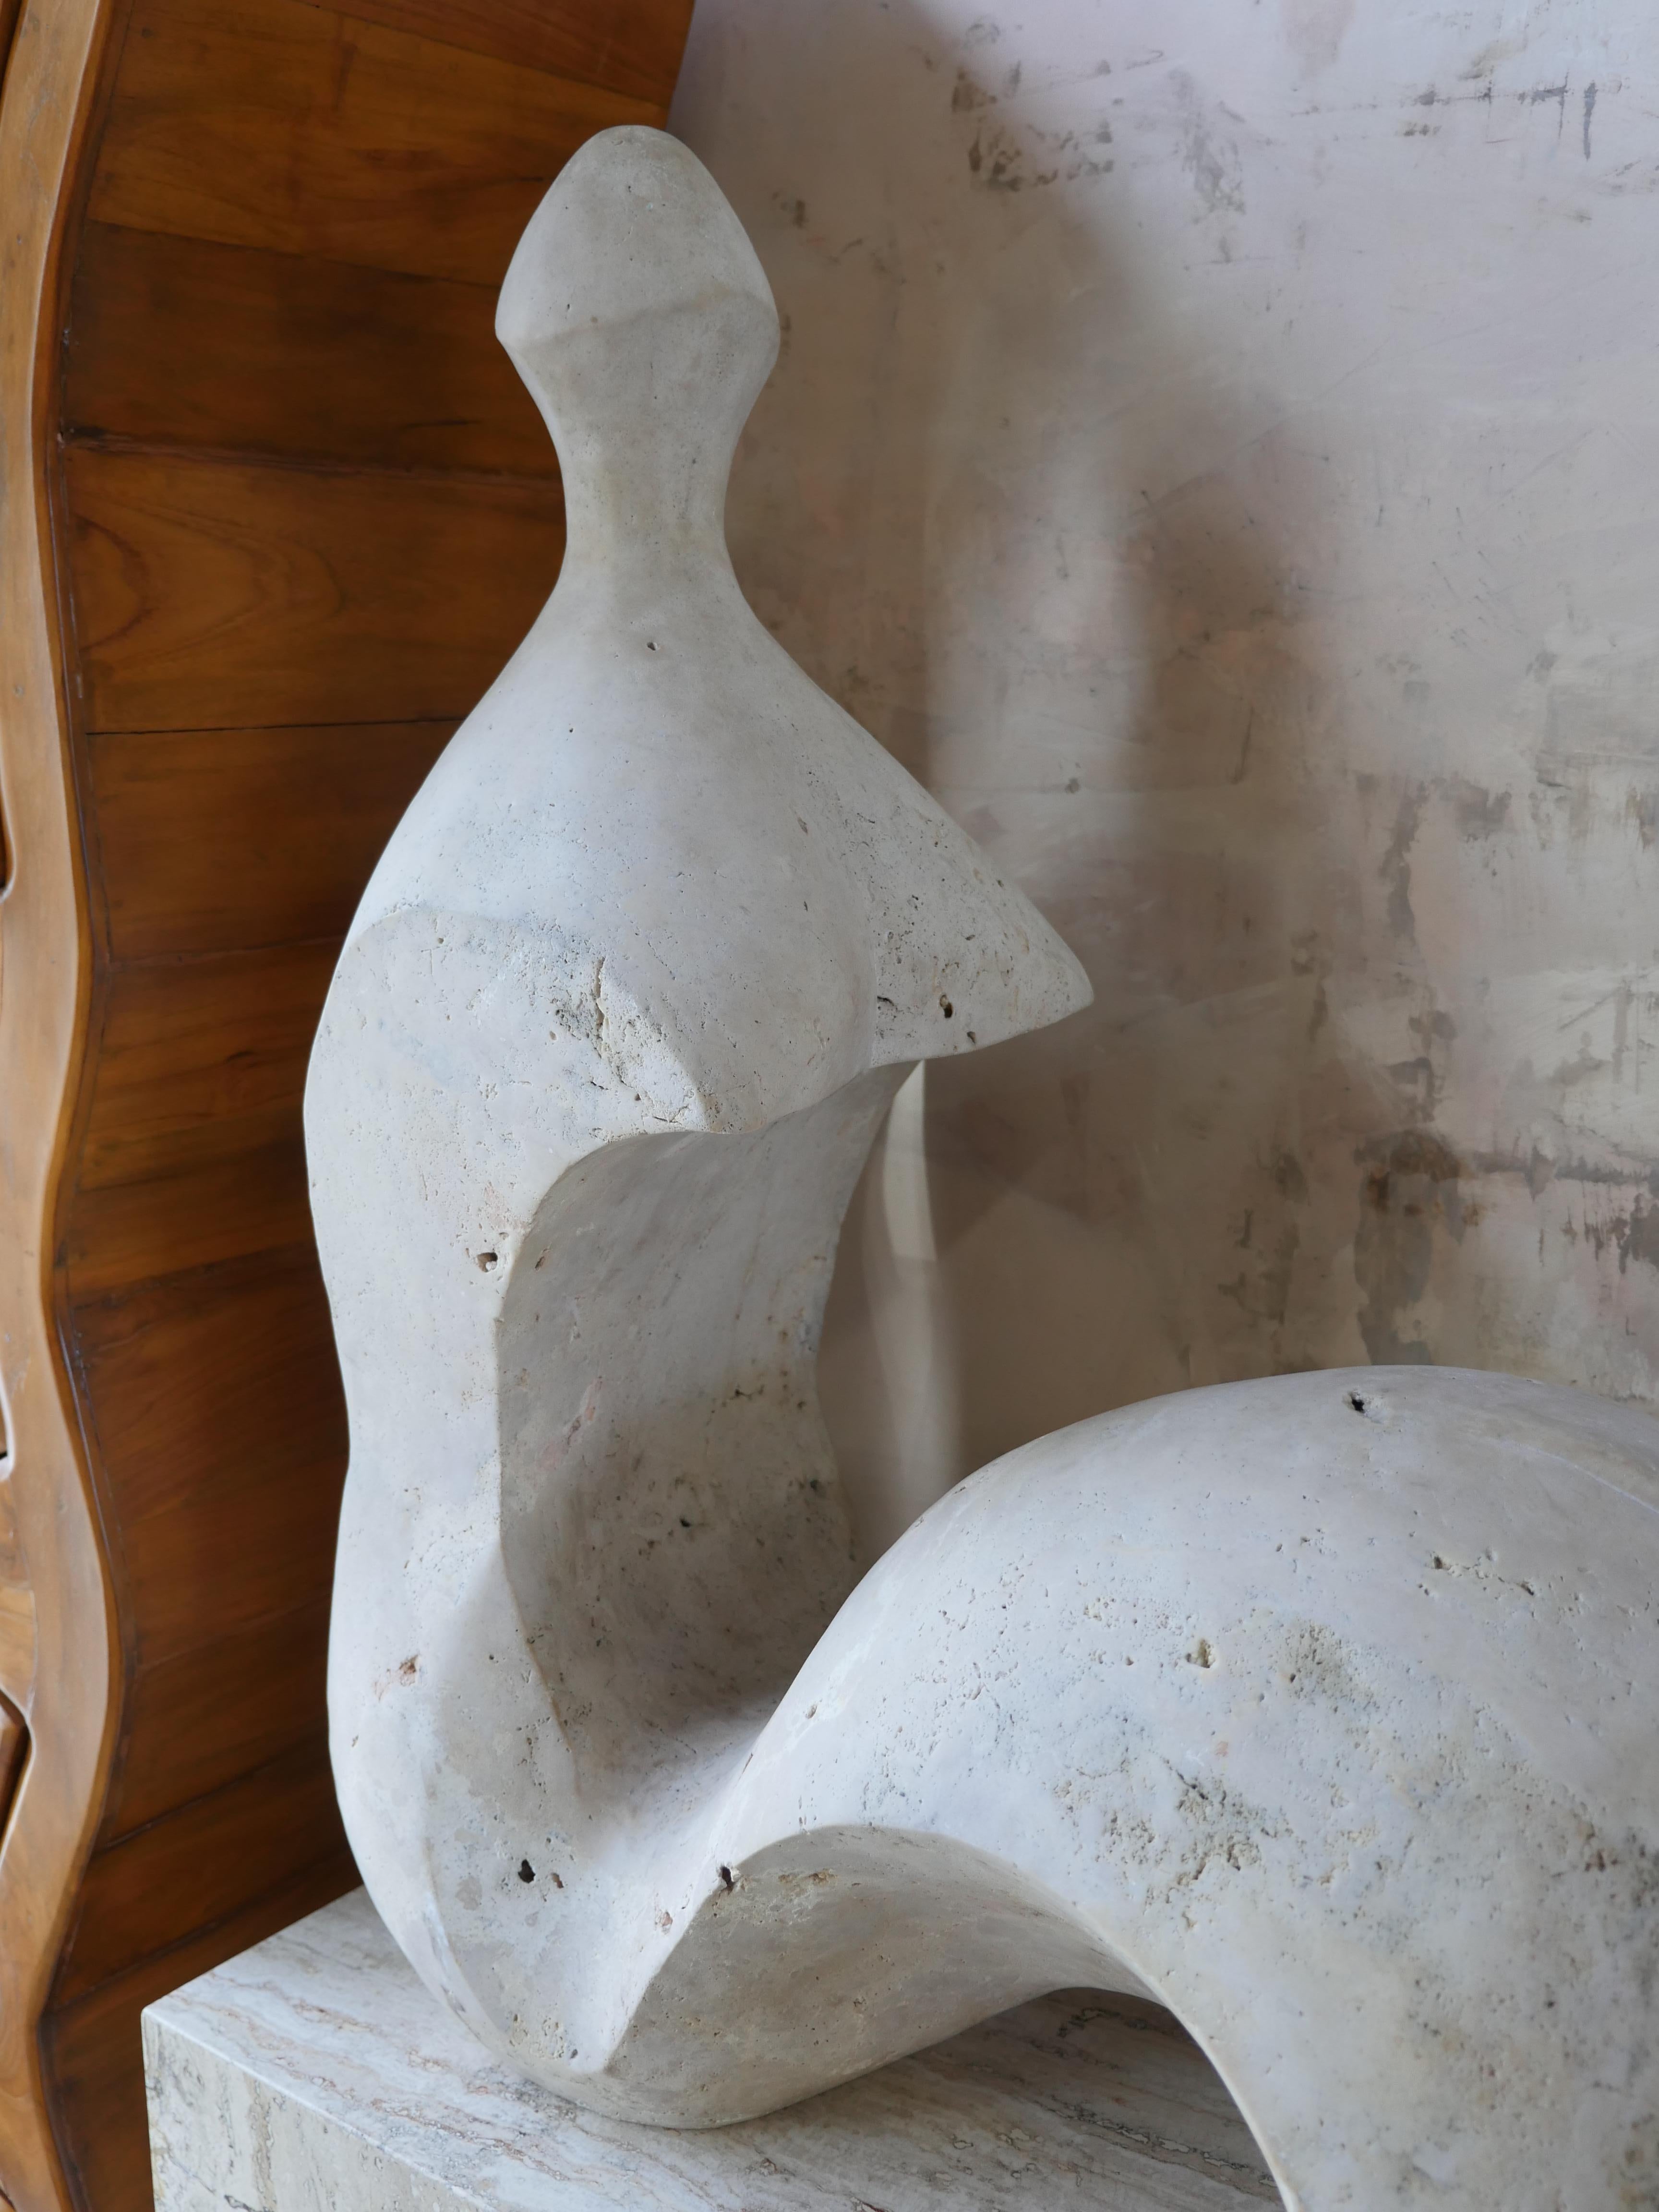 Escultura romana figurativa vintage de los años setenta, realizada en travertino de Scabos sin pulir. El aspecto natural y texturizado del travertino ofrece una mezcla única de variaciones de color tostado, blanquecino y rojo claro por toda la